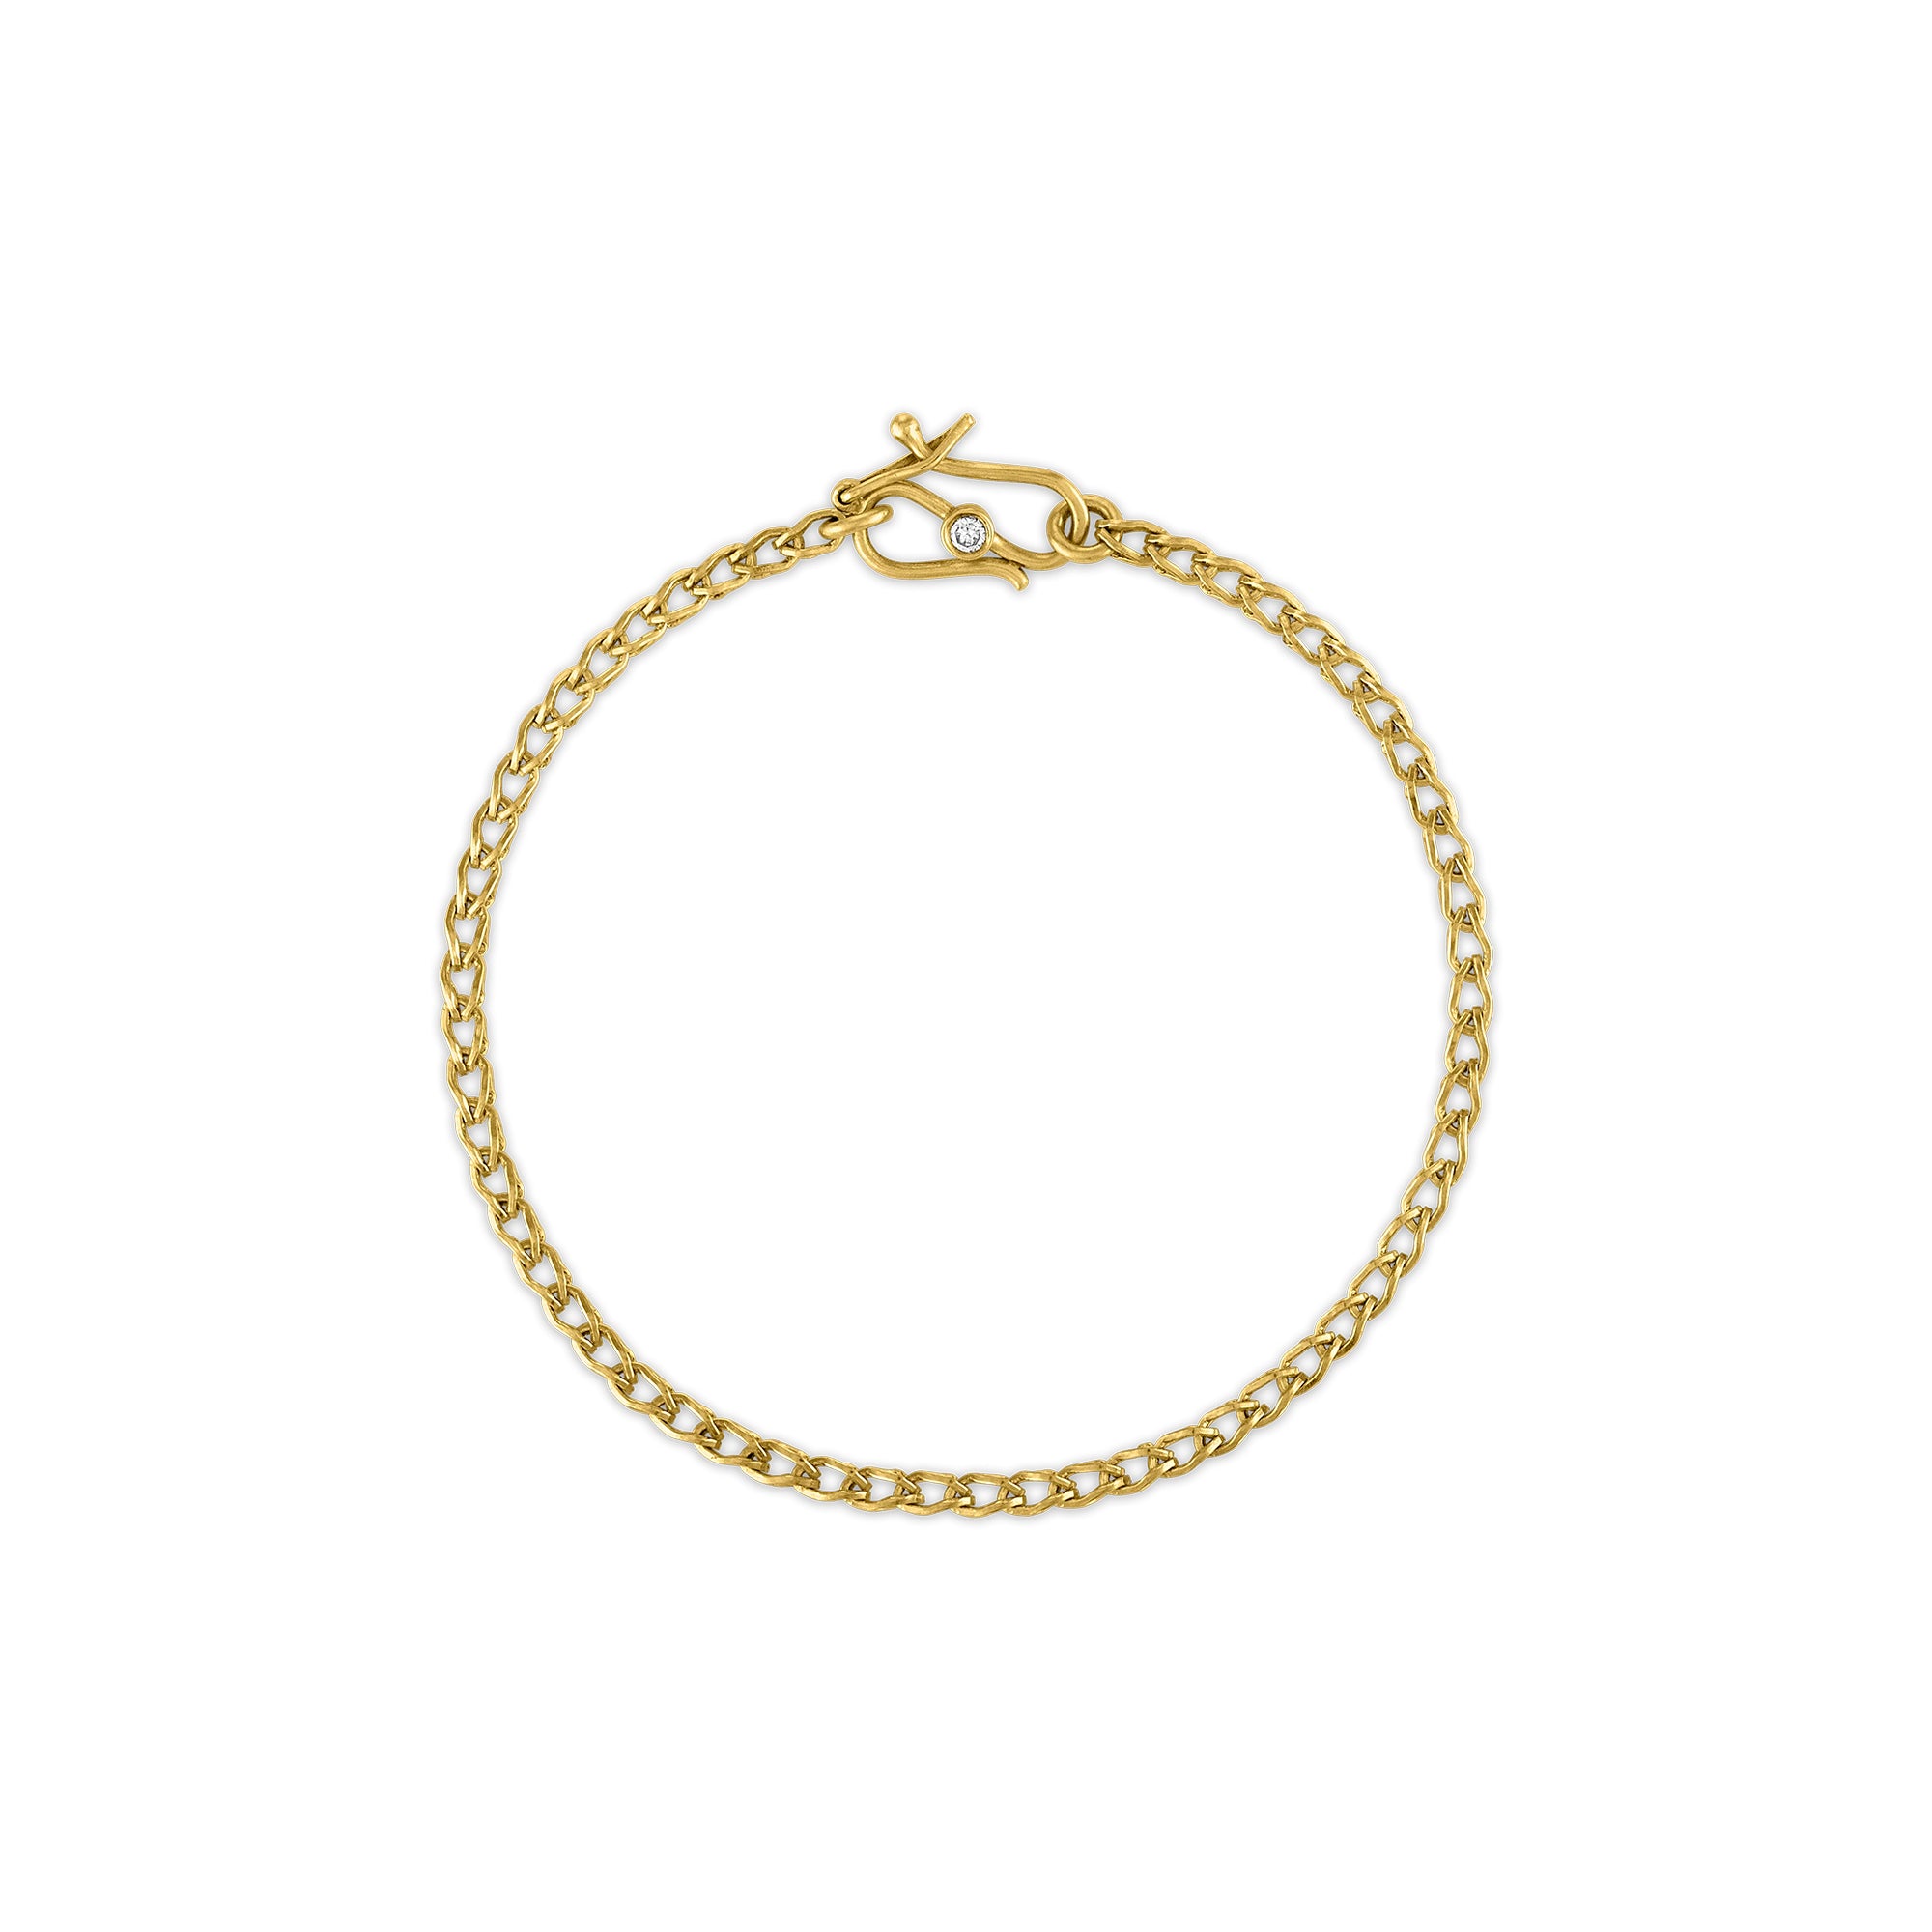 Solo Loop-in-Loop Chain Bracelet